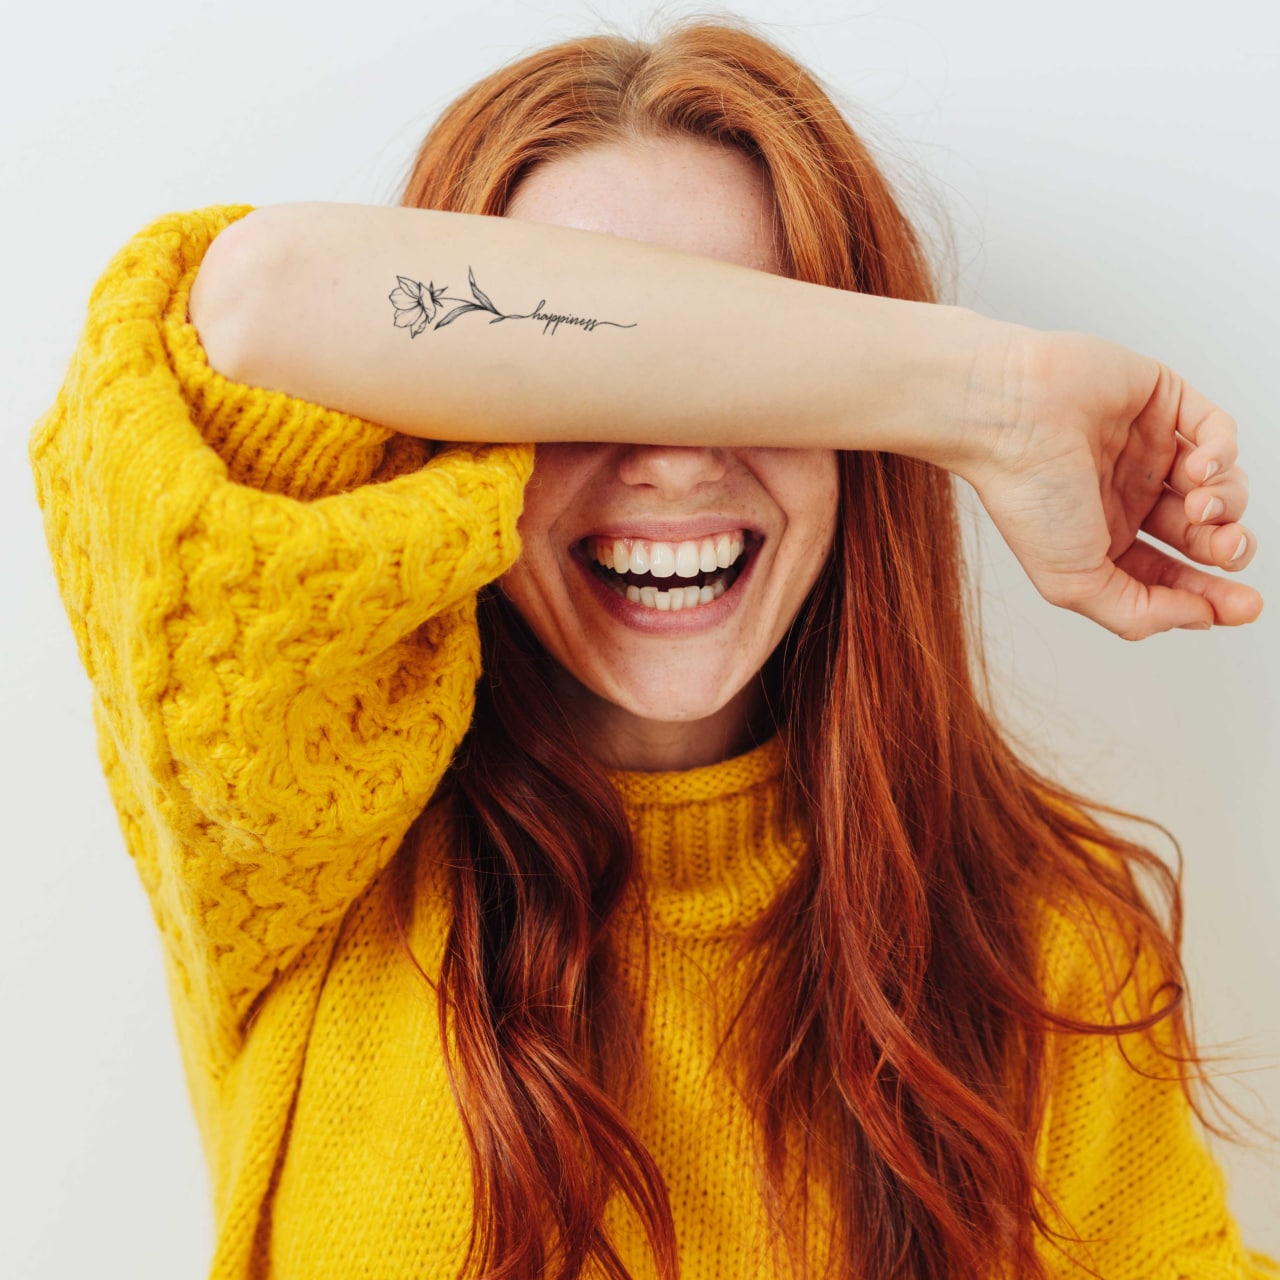 Return to happiness tattoo : r/bipolar